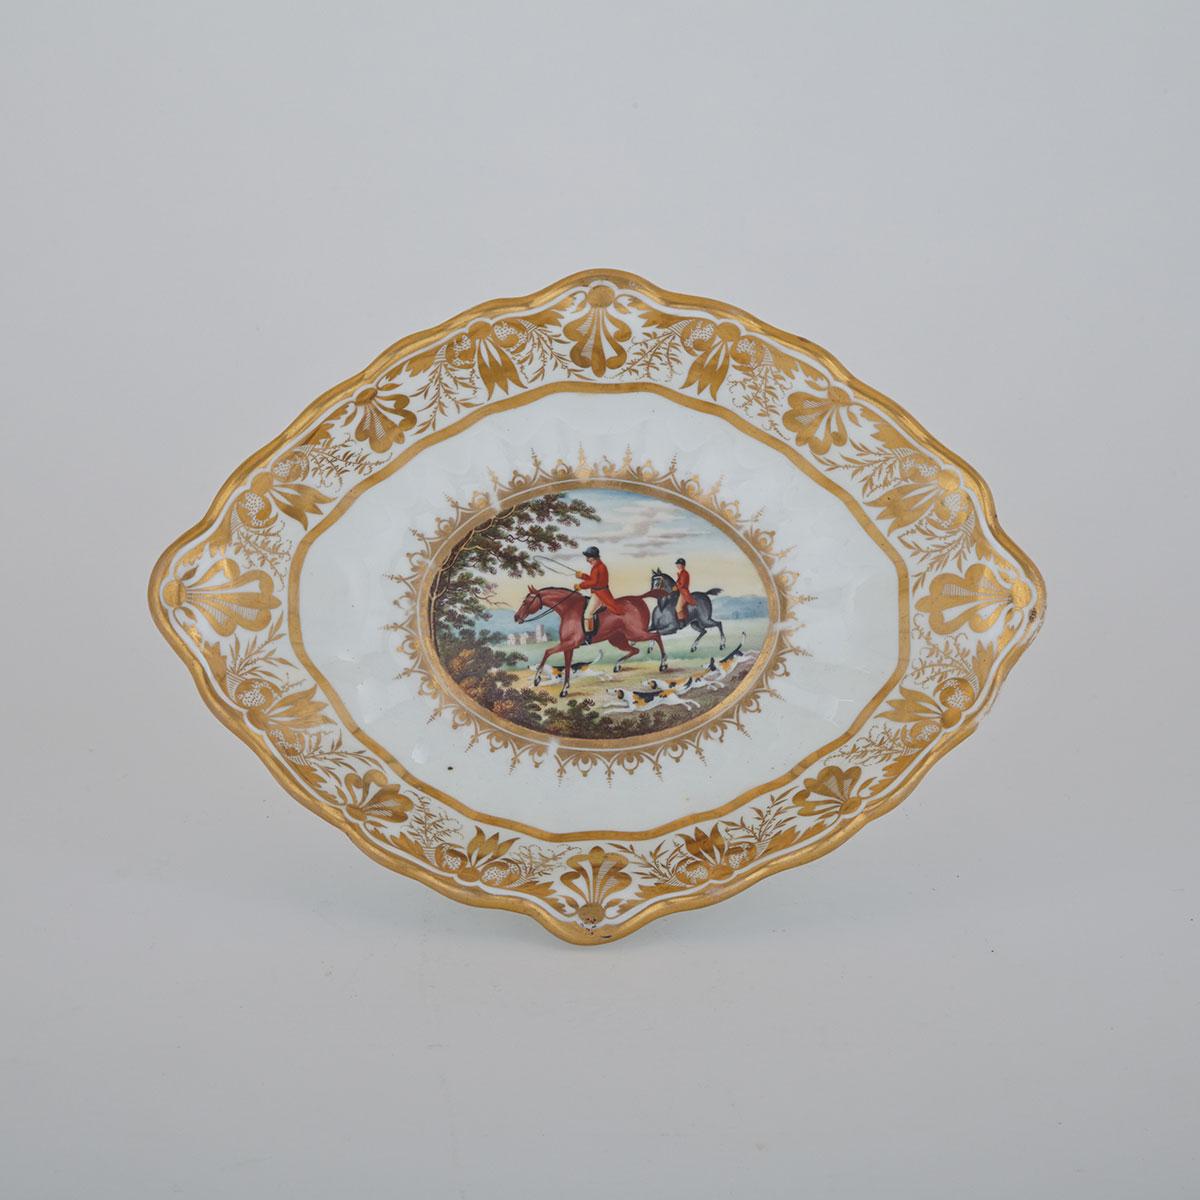 Derby Oval Dessert Dish, c.1815-20